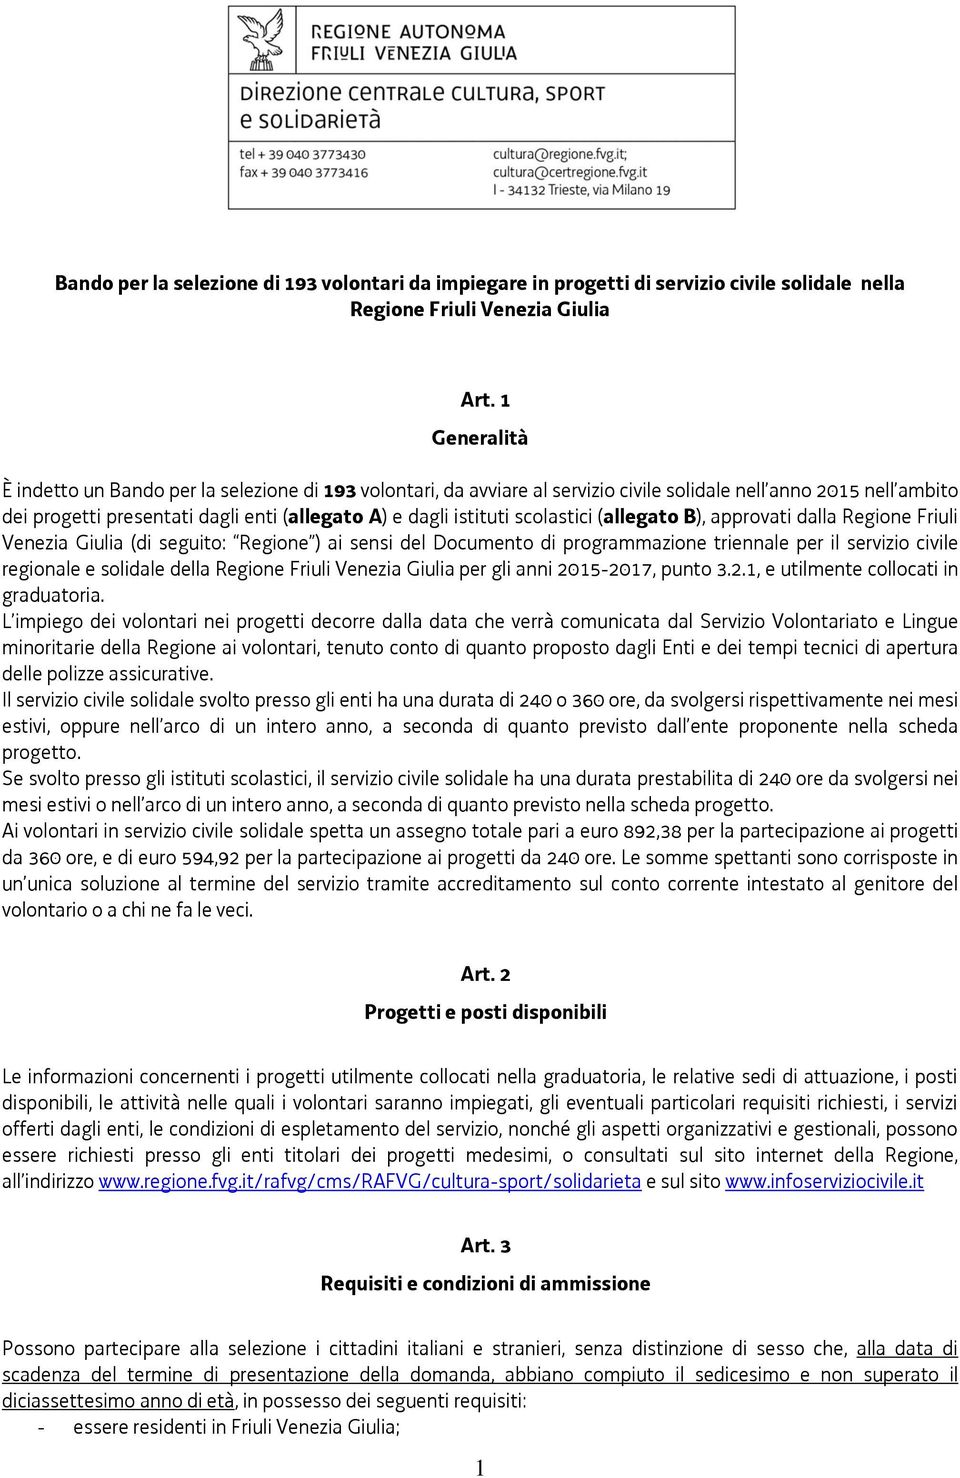 scolastici (allegato B), approvati dalla Regione Friuli Venezia Giulia (di seguito: Regione ) ai sensi del Documento di programmazione triennale per il servizio civile regionale e solidale della